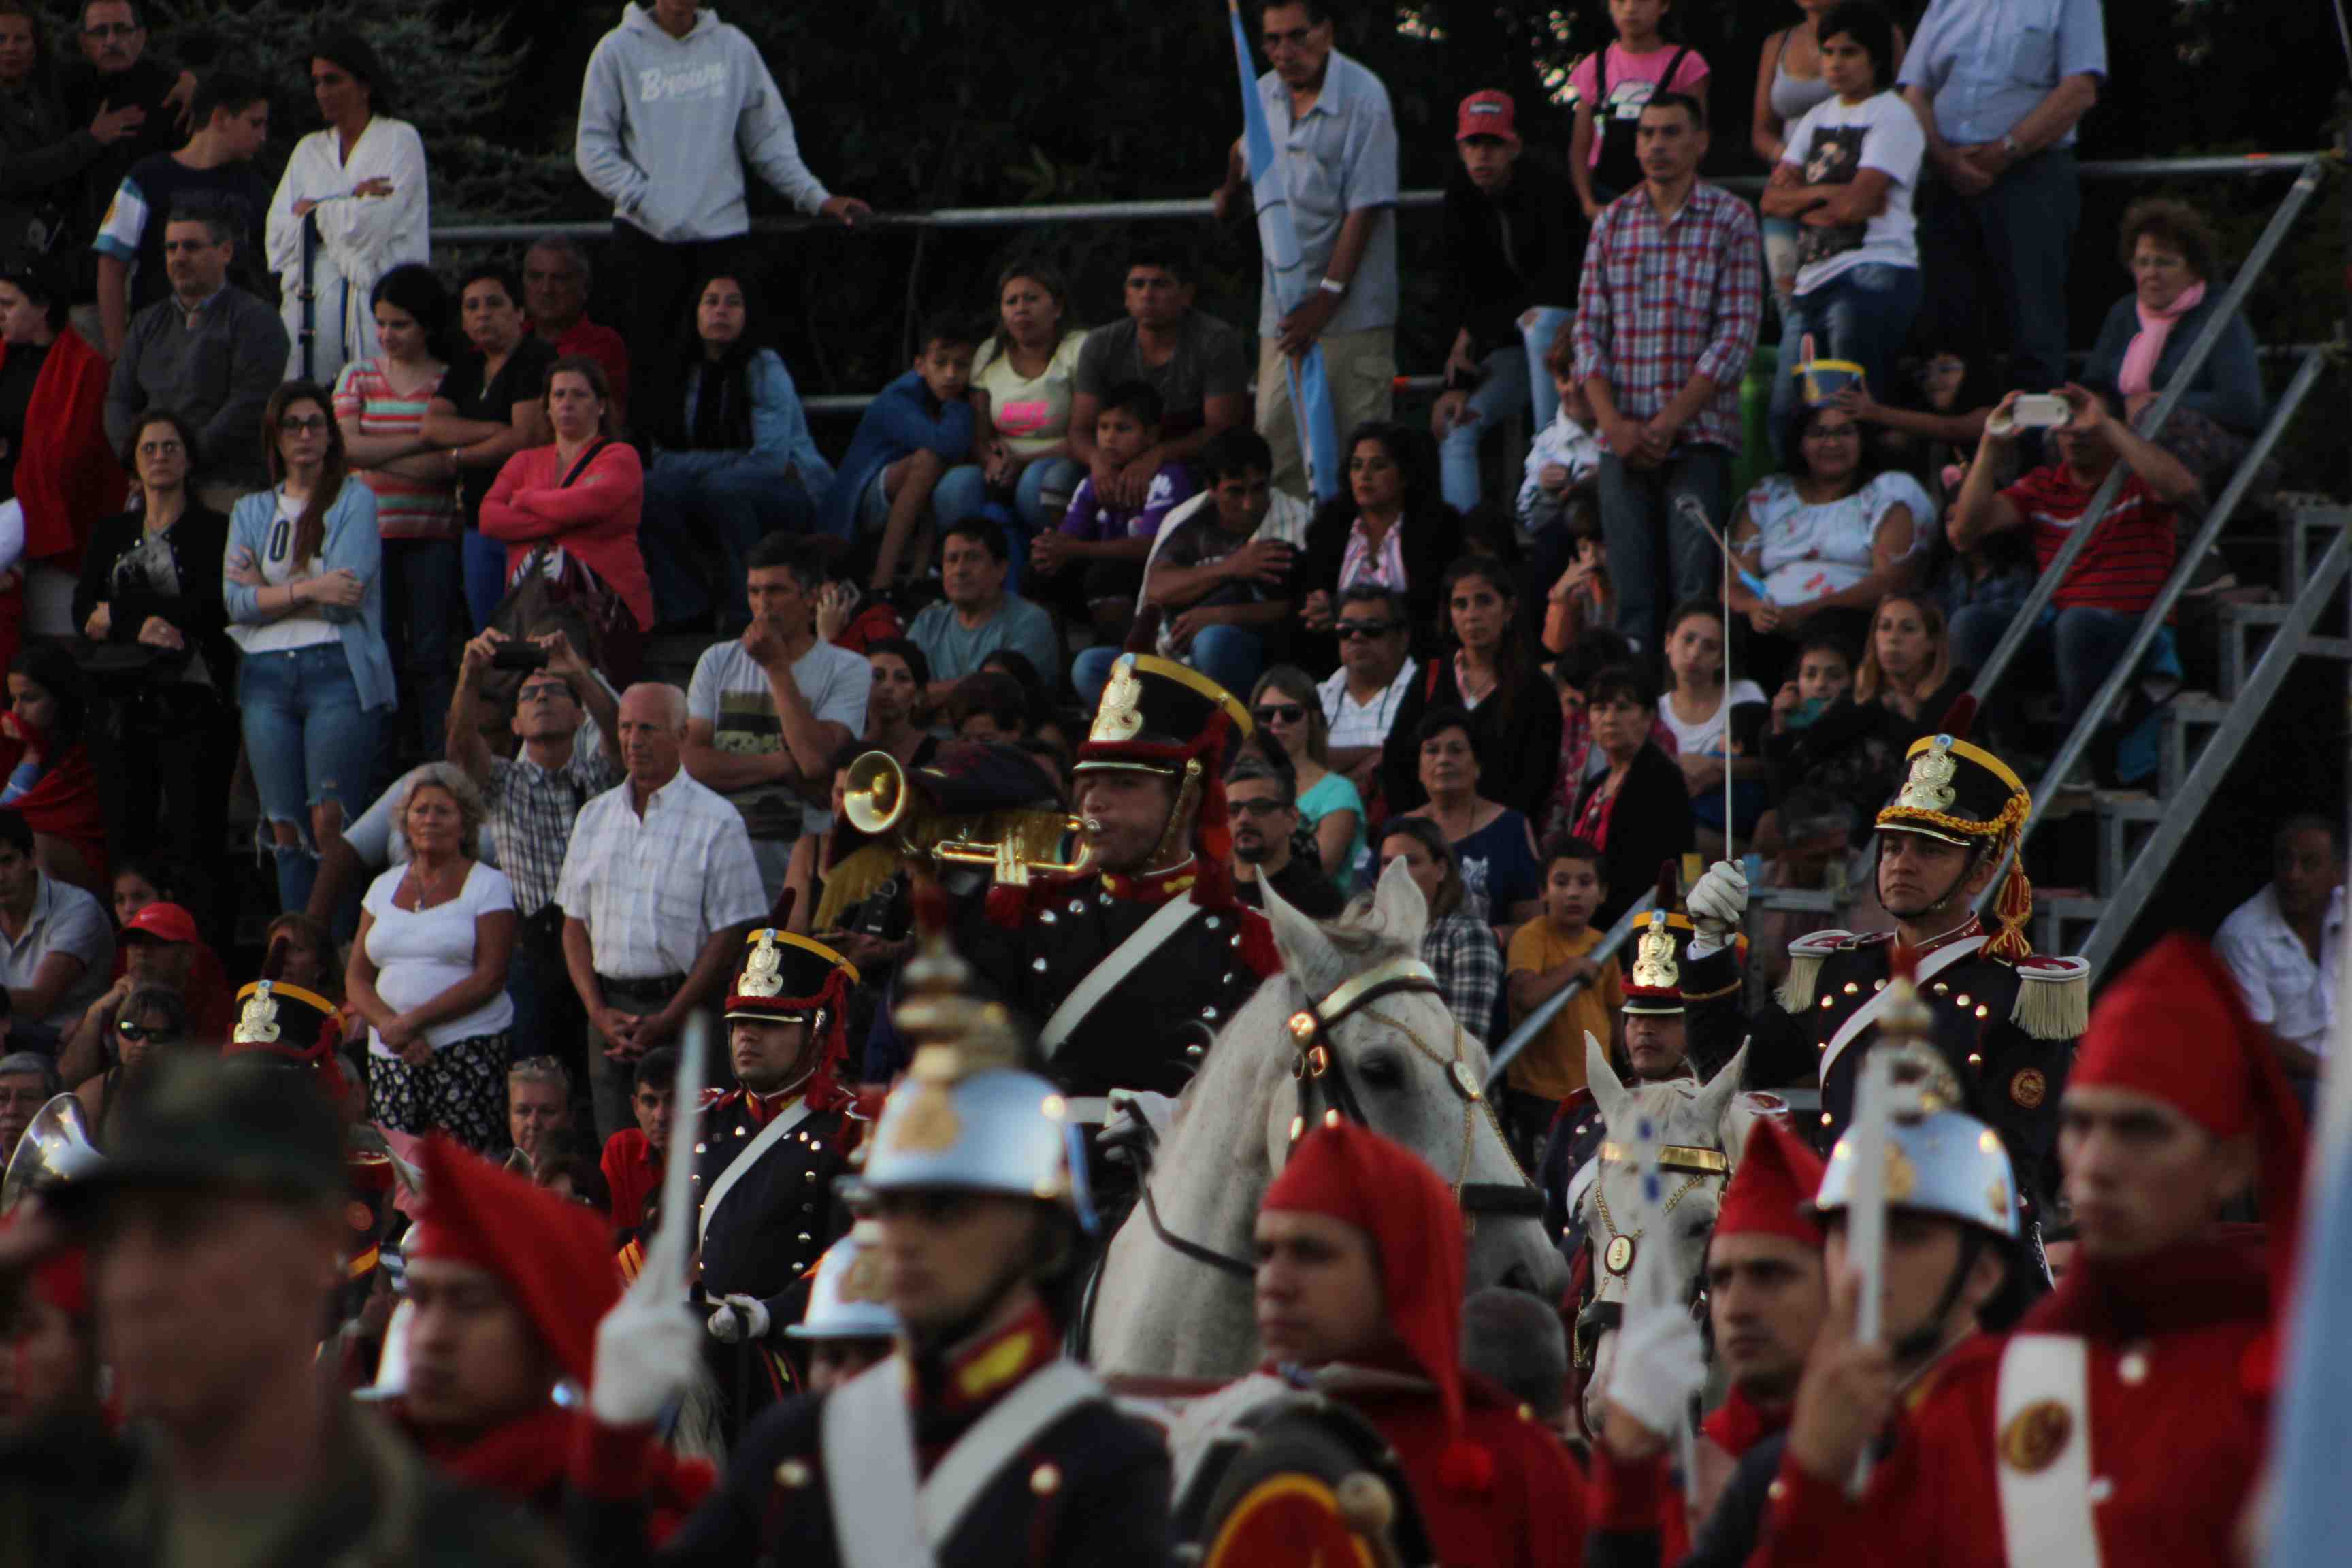 El trompa de granaderos toca Silencio Militar en honor a los caídos en el Combate de San Lorenzo